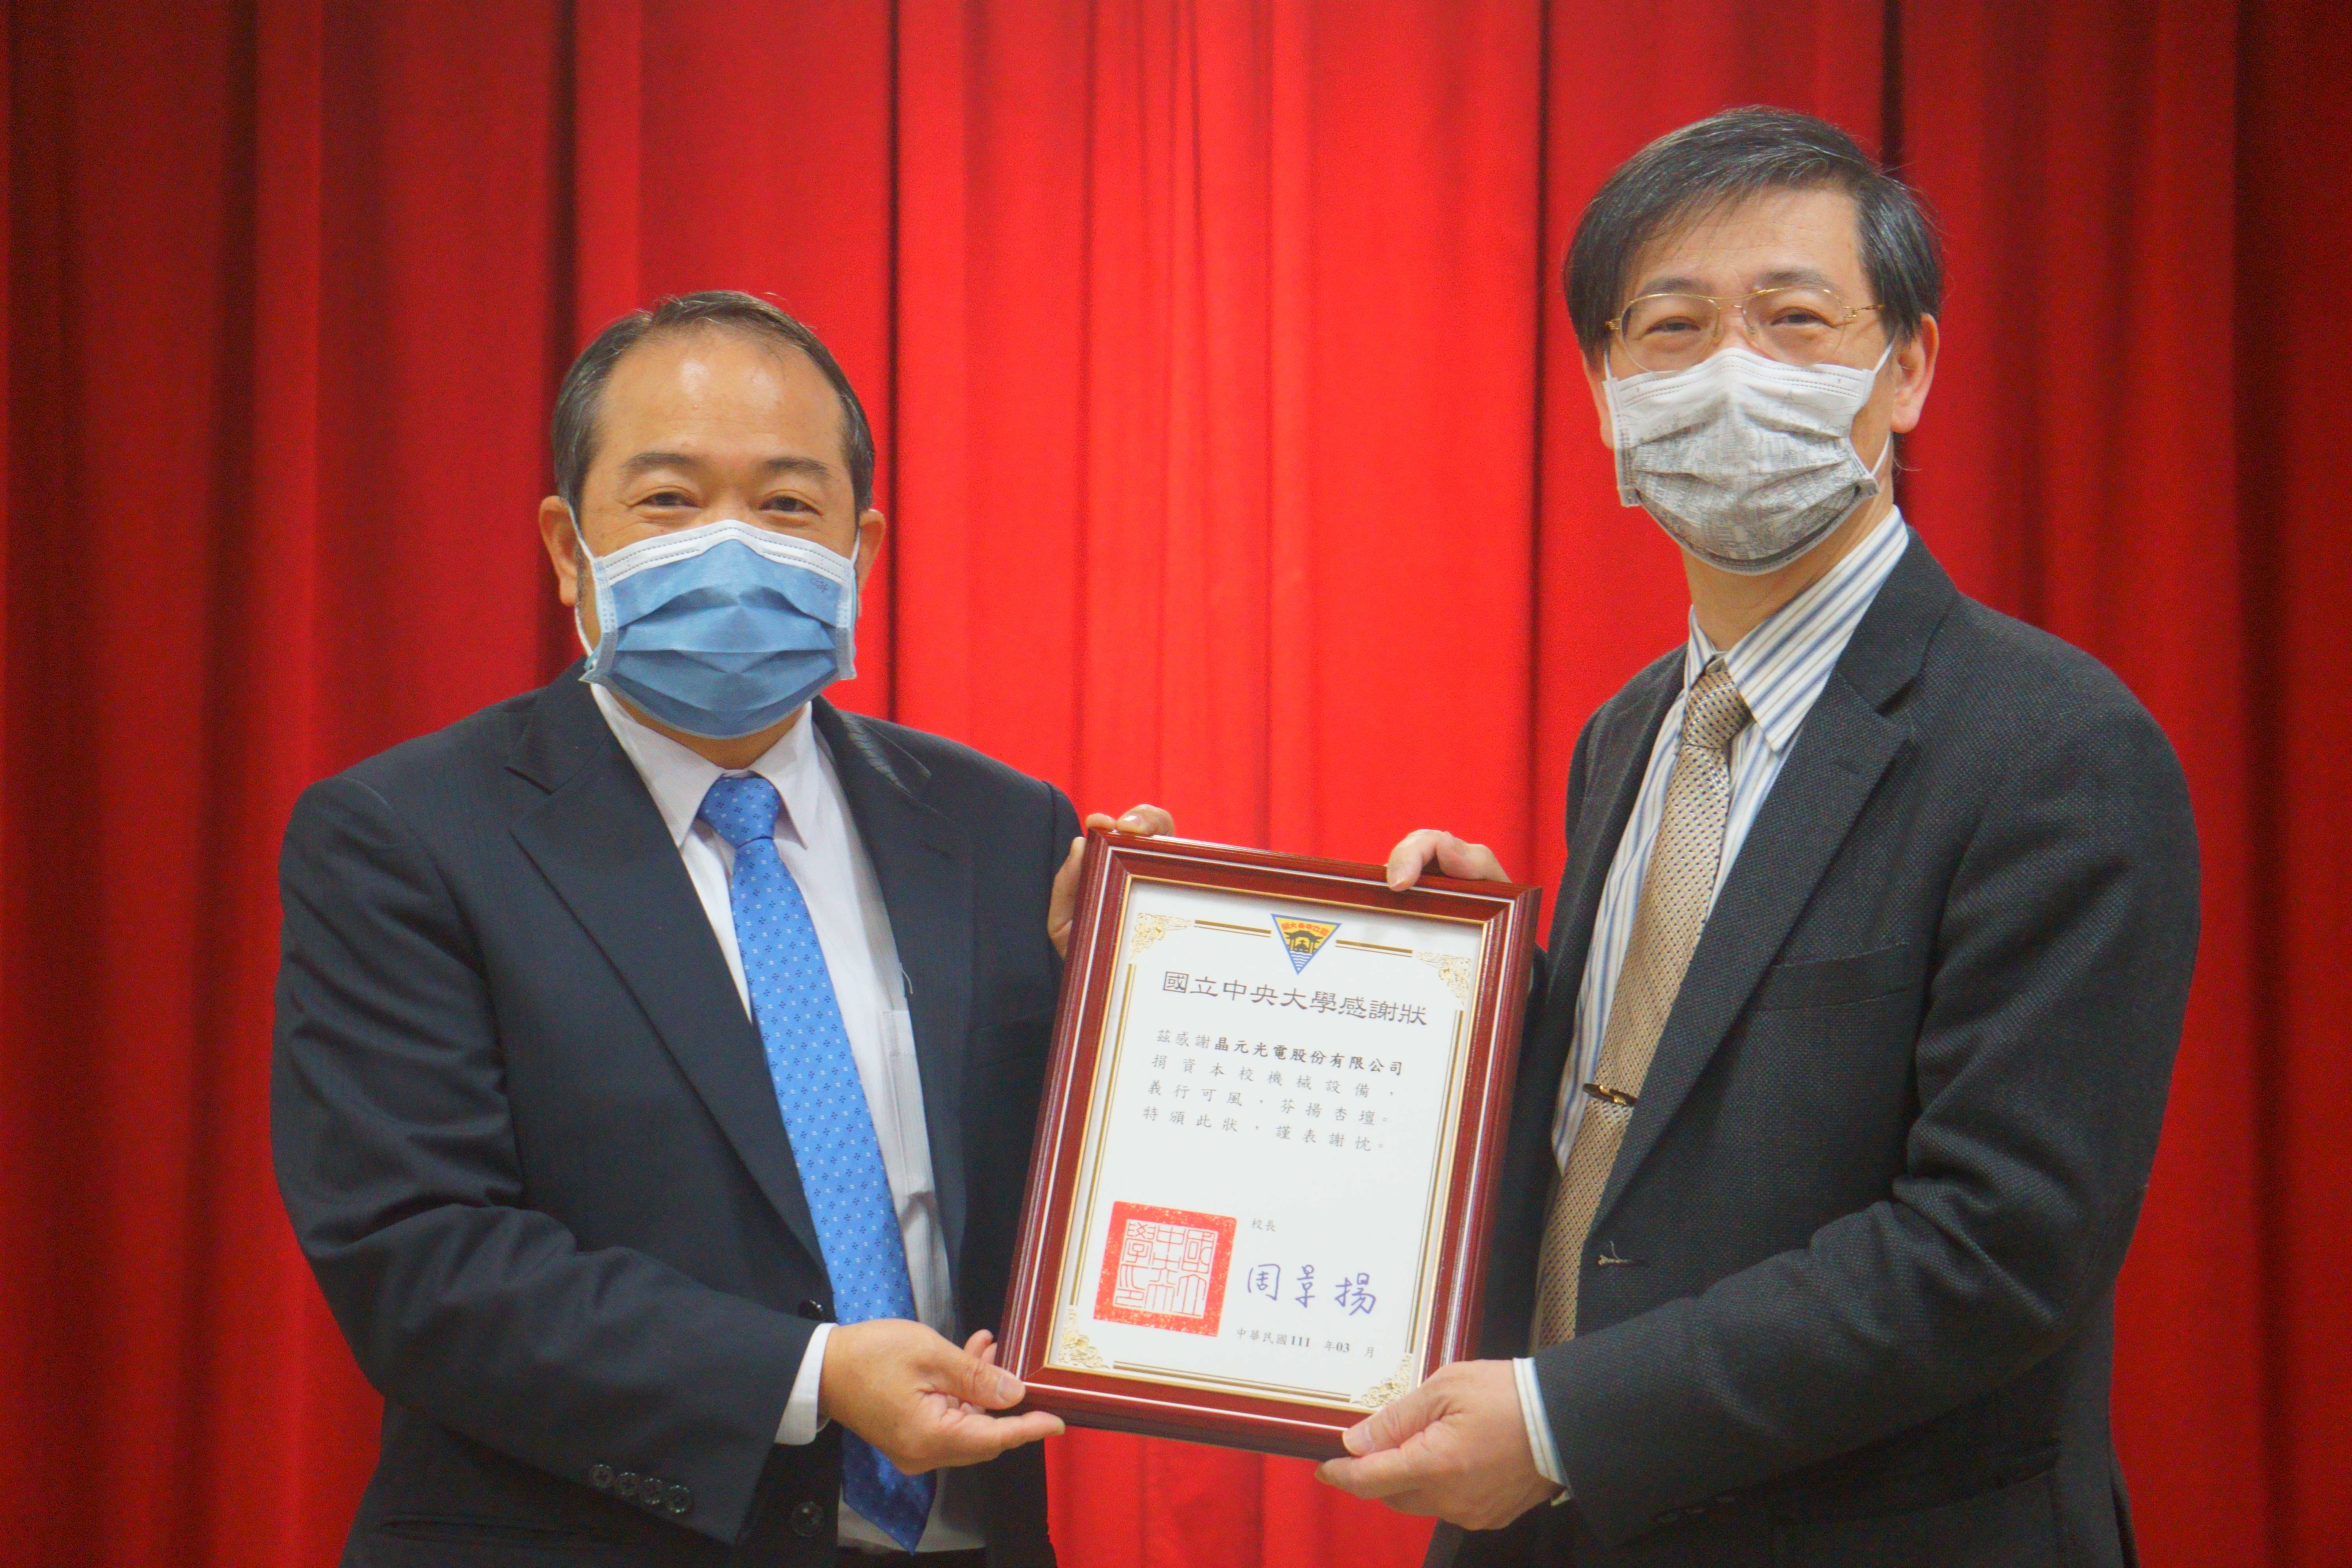 綦振瀛副校長(右)代表全體師生致贈感謝狀給晶元光電范進雍董事長(左)。照片理學院提供。